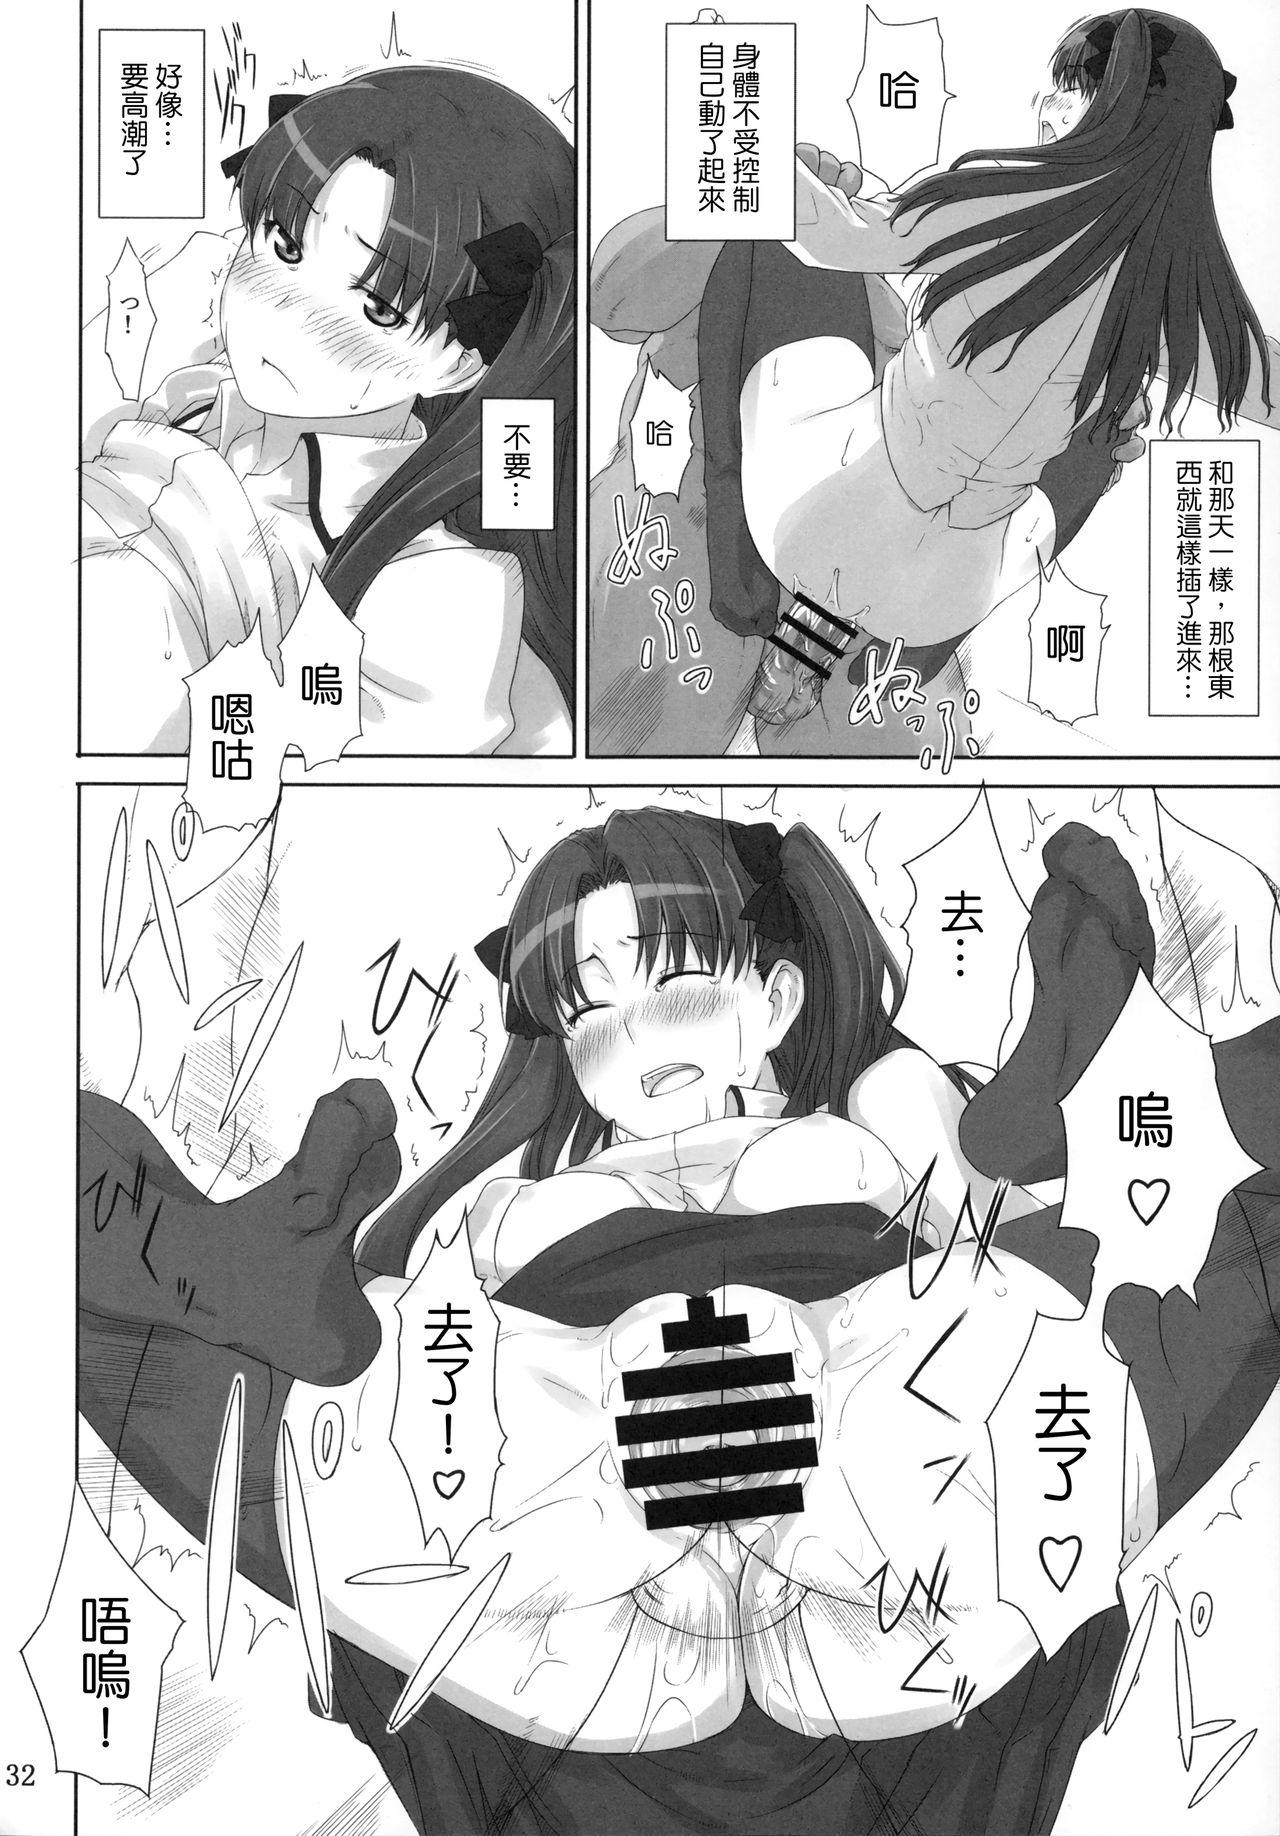 Show Tohsaka-ke no Kakei Jijou 2 - Fate stay night Teasing - Page 8